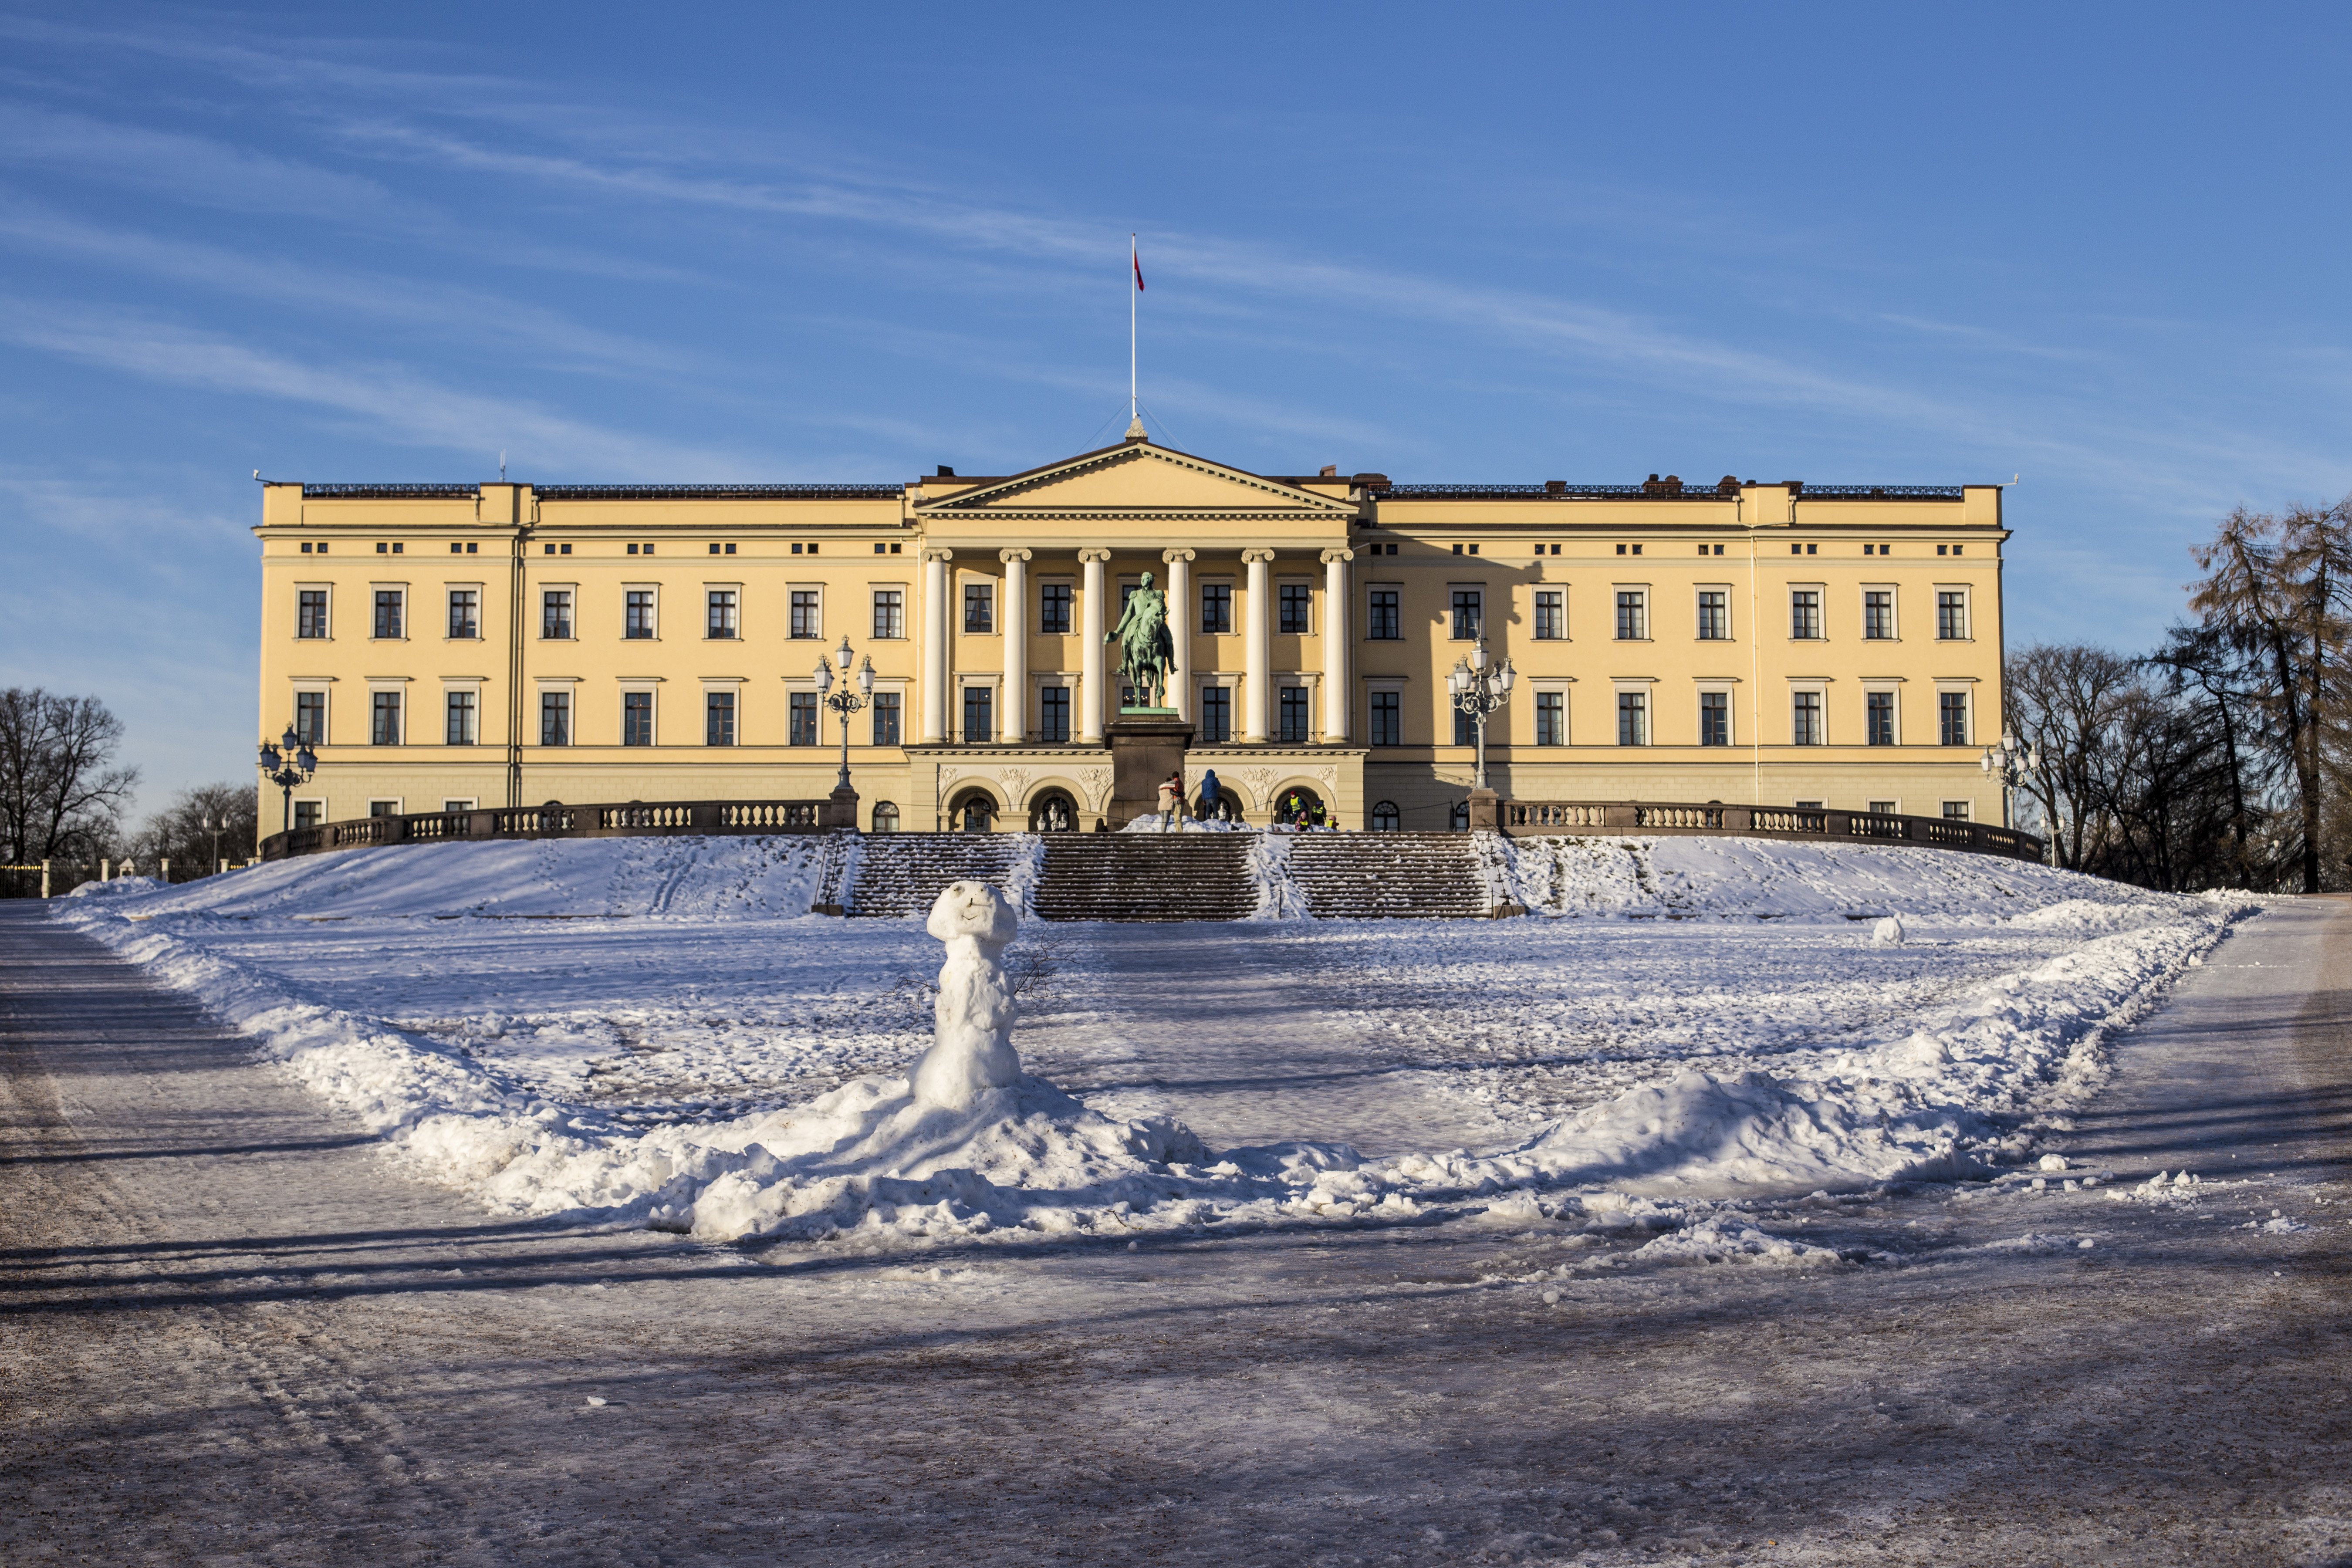 Hoteles cerca del Palacio Real en Oslo